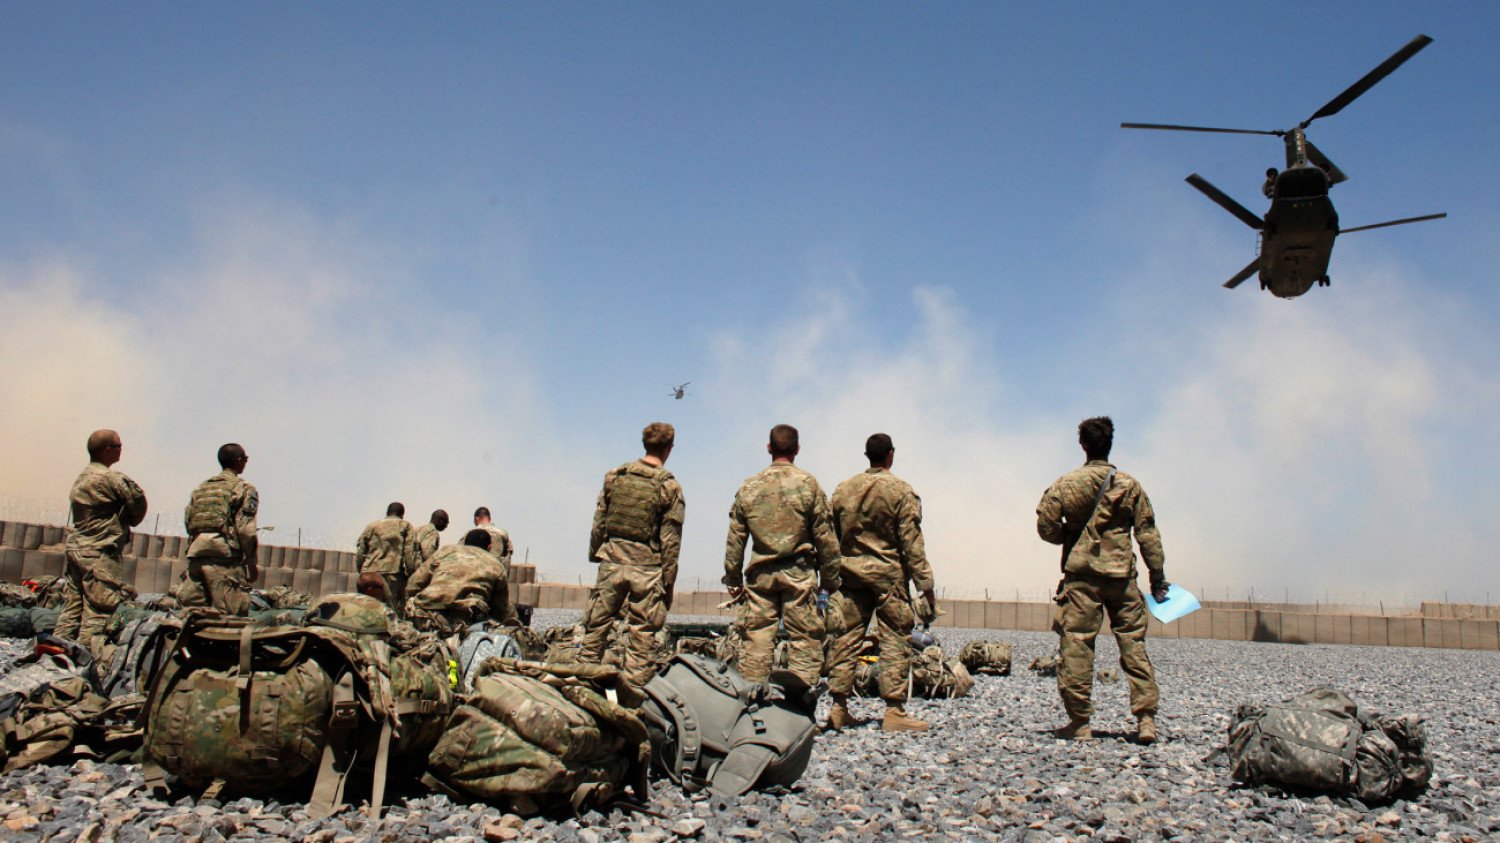 Μειώνονται οι δυνάμεις του αμερικανικού στρατού σε Ιράκ και Αφγανιστάν – Έμειναν 2.500 στρατιώτες